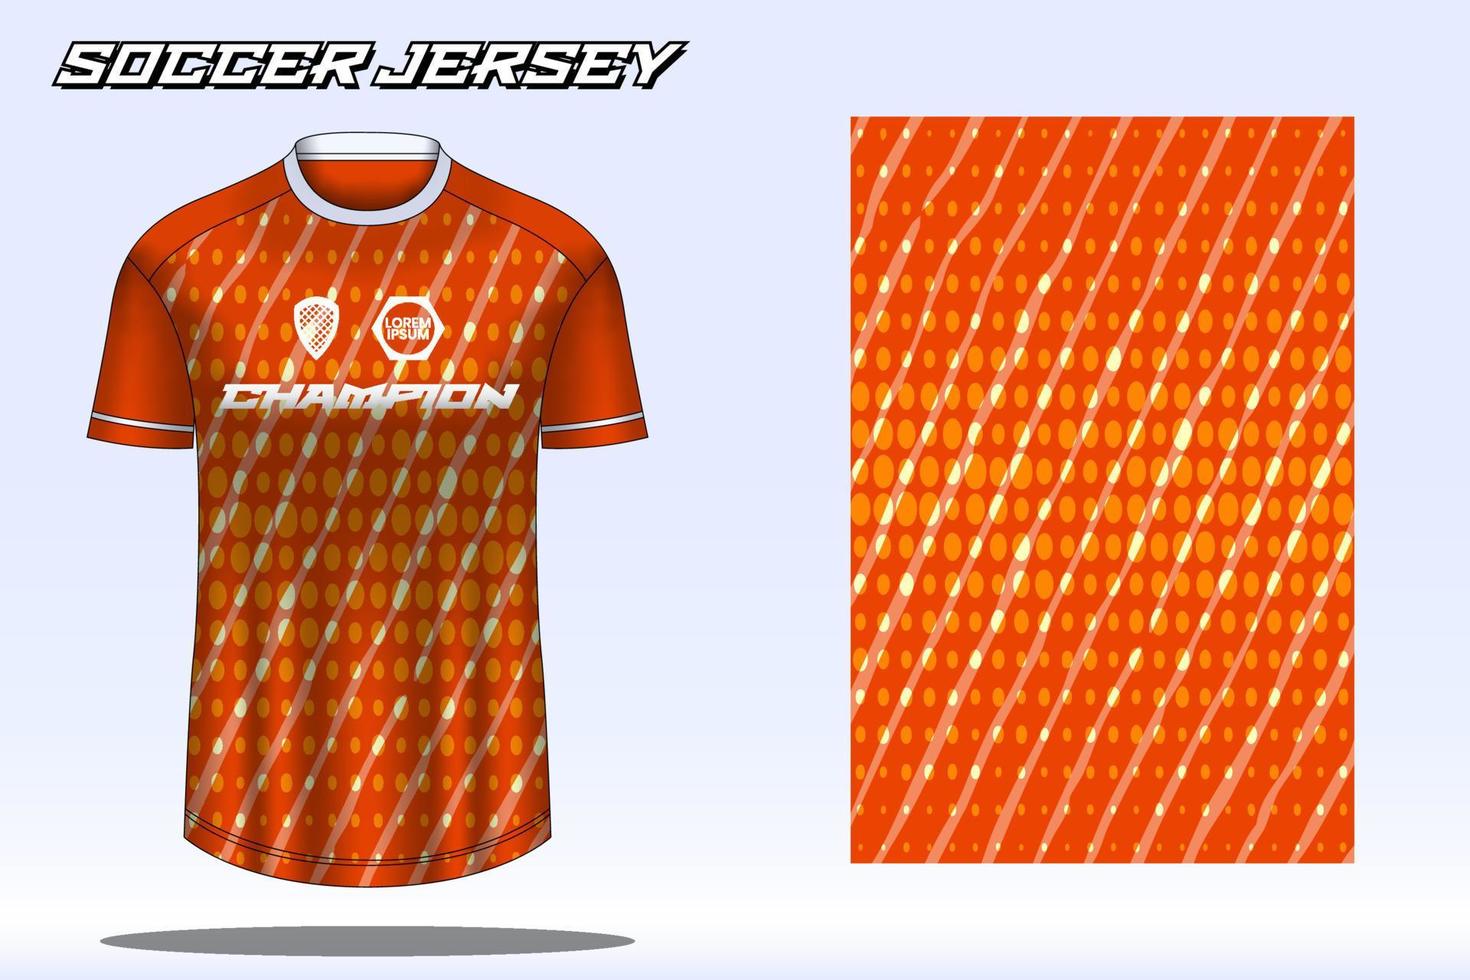 maquete de design de camiseta esportiva de camisa de futebol para clube de futebol vetor